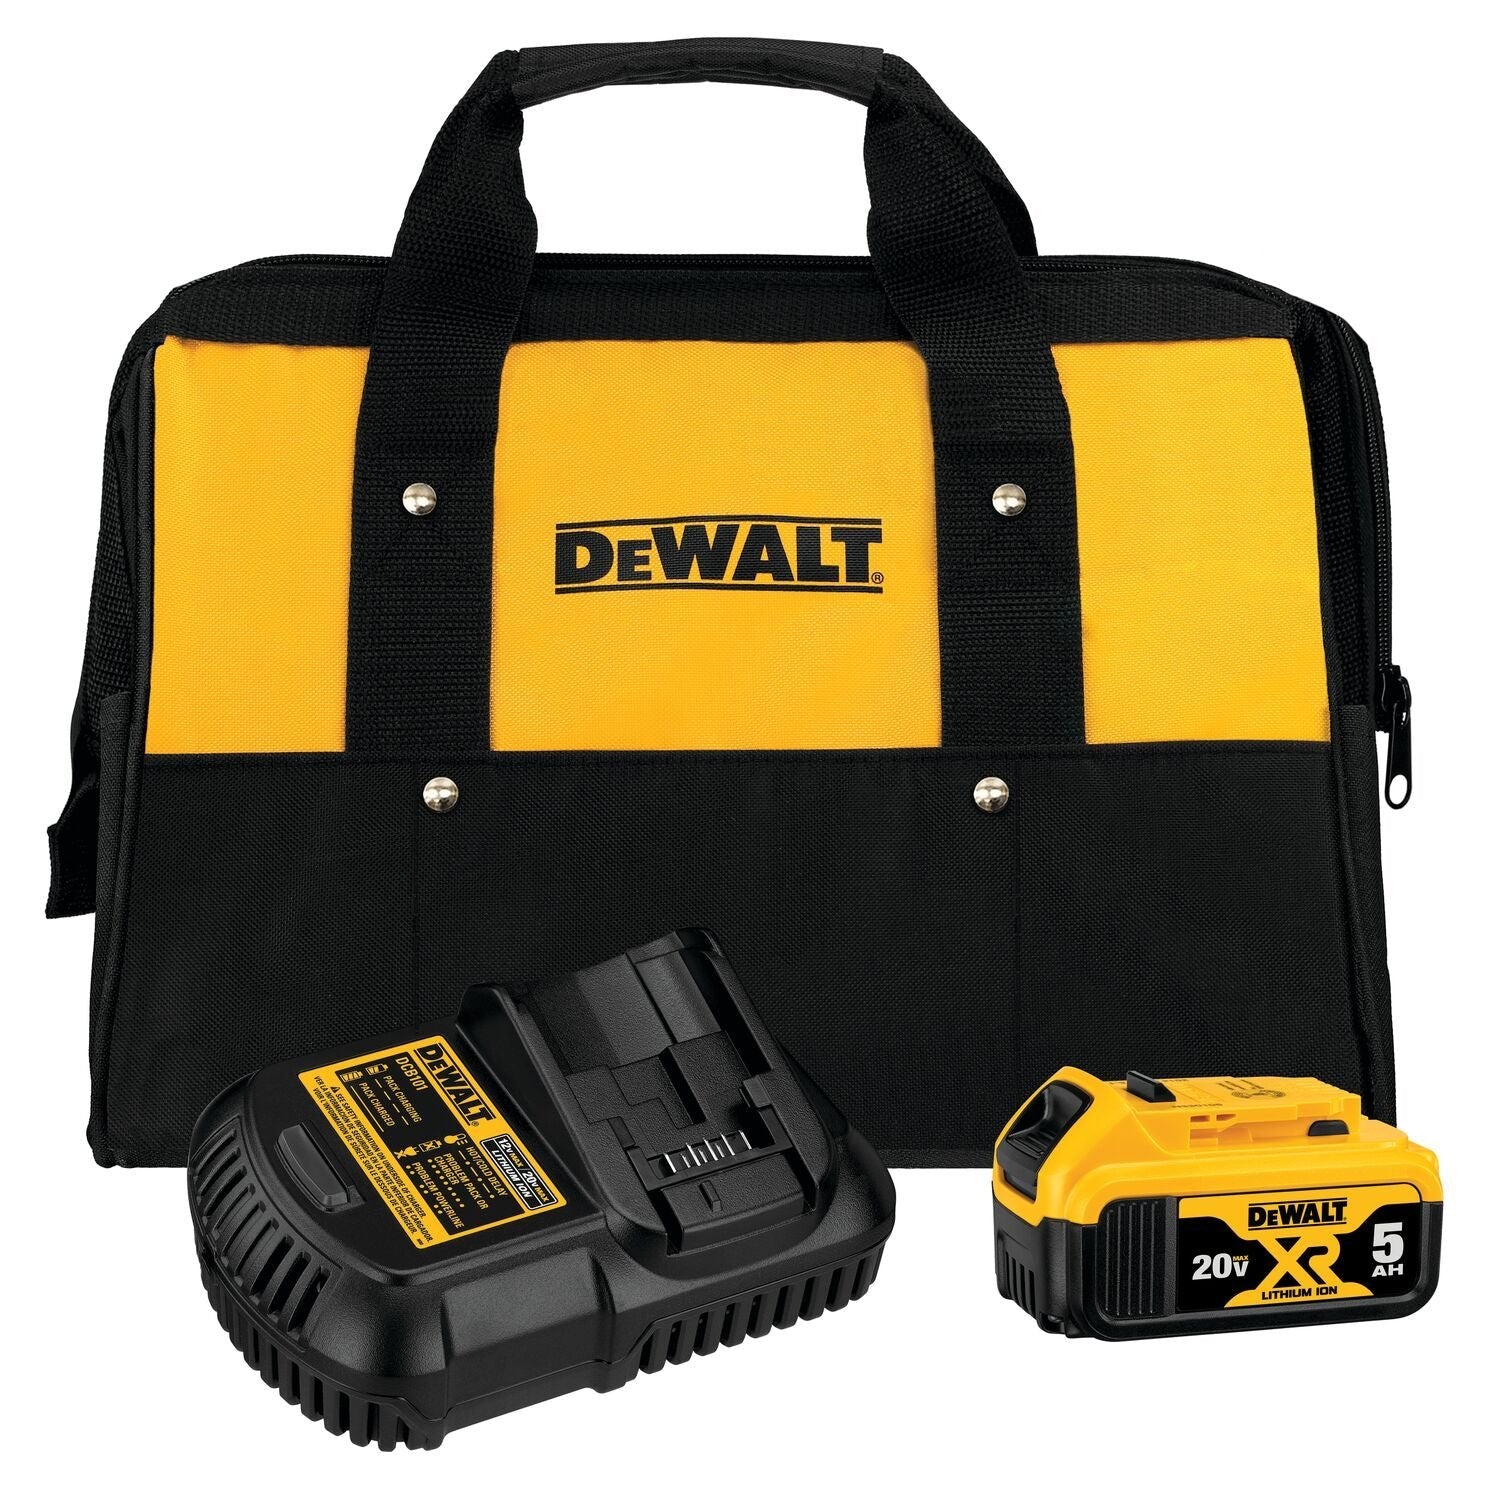 DEWALT DCB205CK 20V MAX* 5.0Ah Battery Charger Kit with Bag